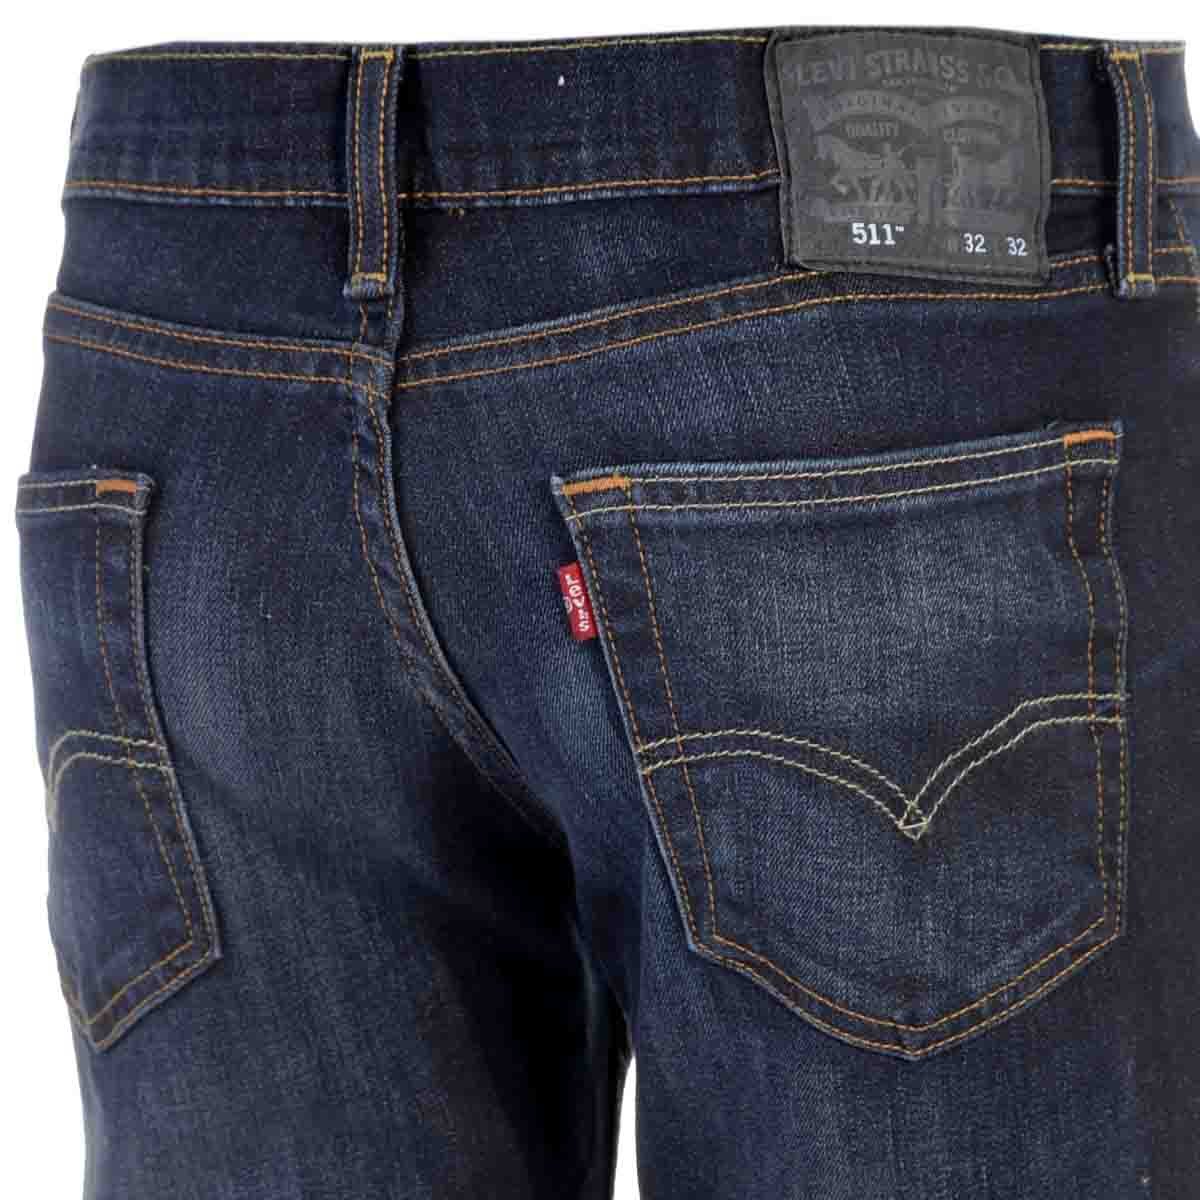 Levi's 511 Slim Fit Jeans Modelo Elo45111390 Talla Plus para Hombre